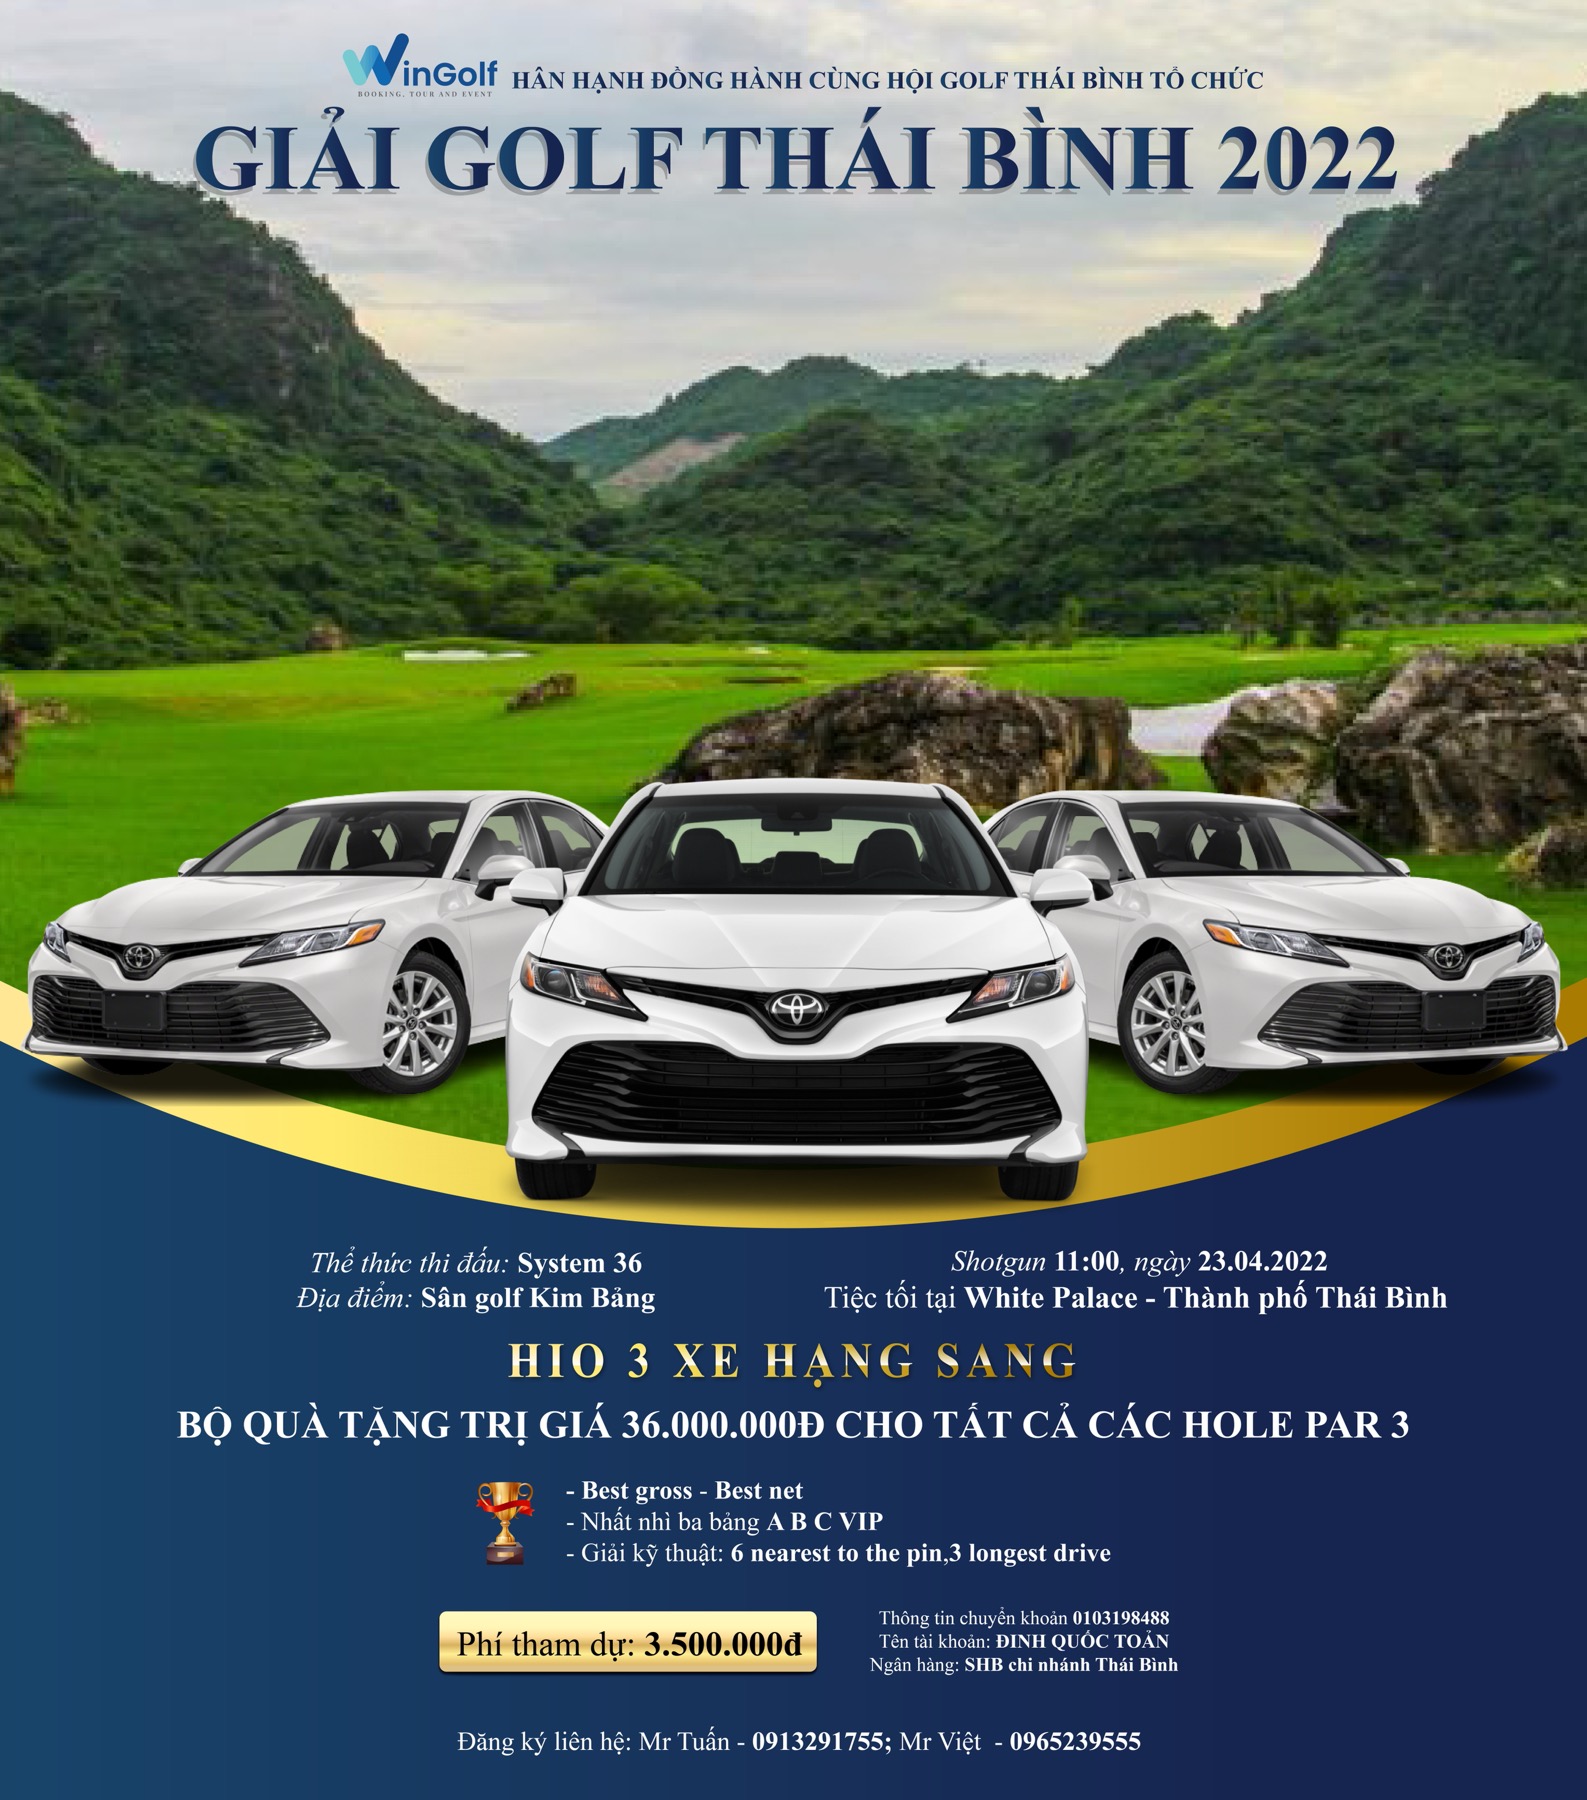 Khởi tranh "Giải golf Thái Bình 2022” - Hấp dẫn với cơ cấu giải thưởng HIO vô cùng giá trị